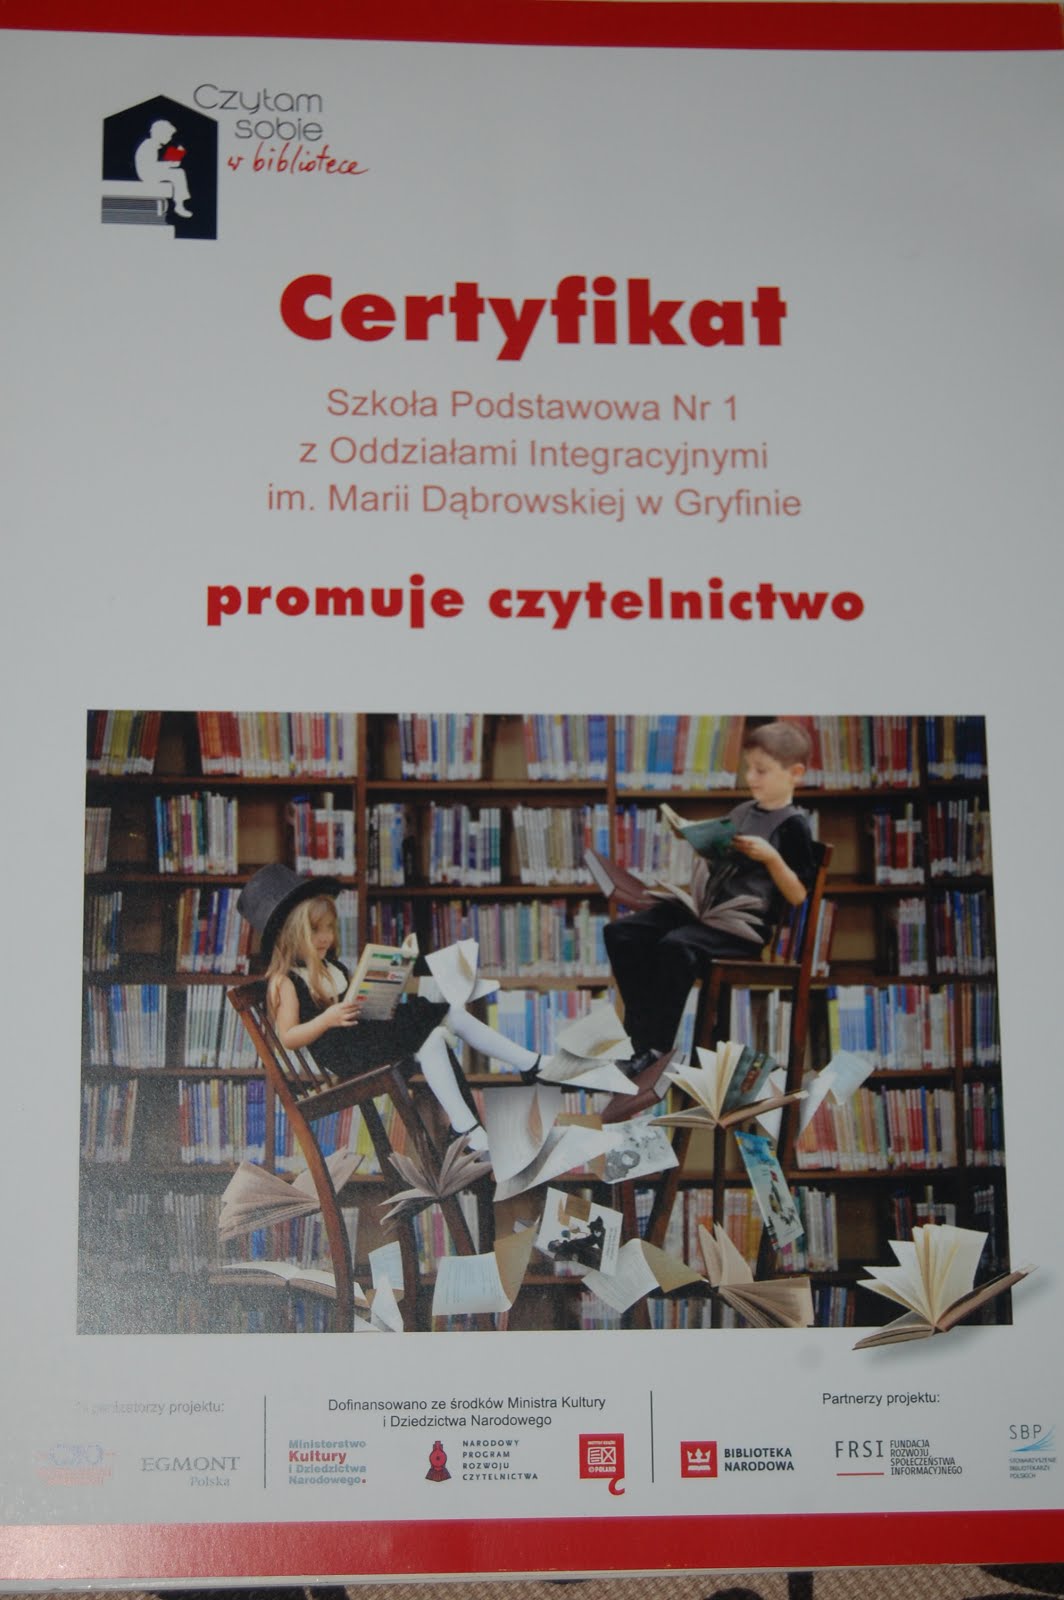 Certyfikat - Czytam sobie w bibliotece